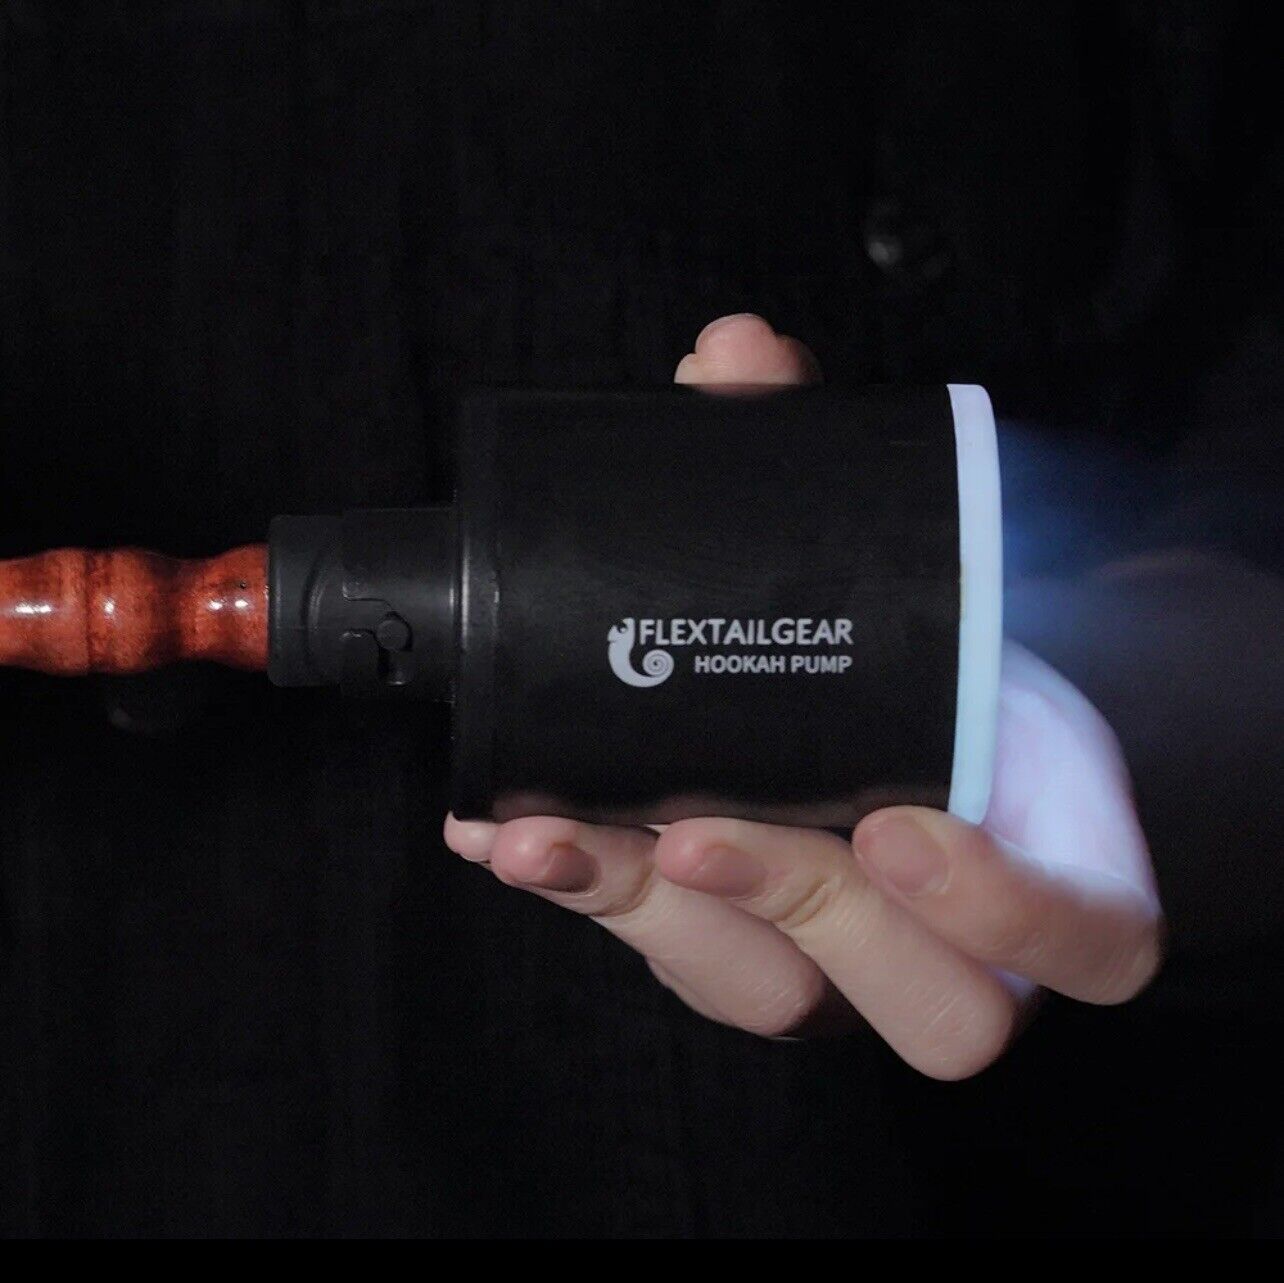 Electric Hookah Pump Mini Portable Starter Charcoal Burner Led Light Helper Kit